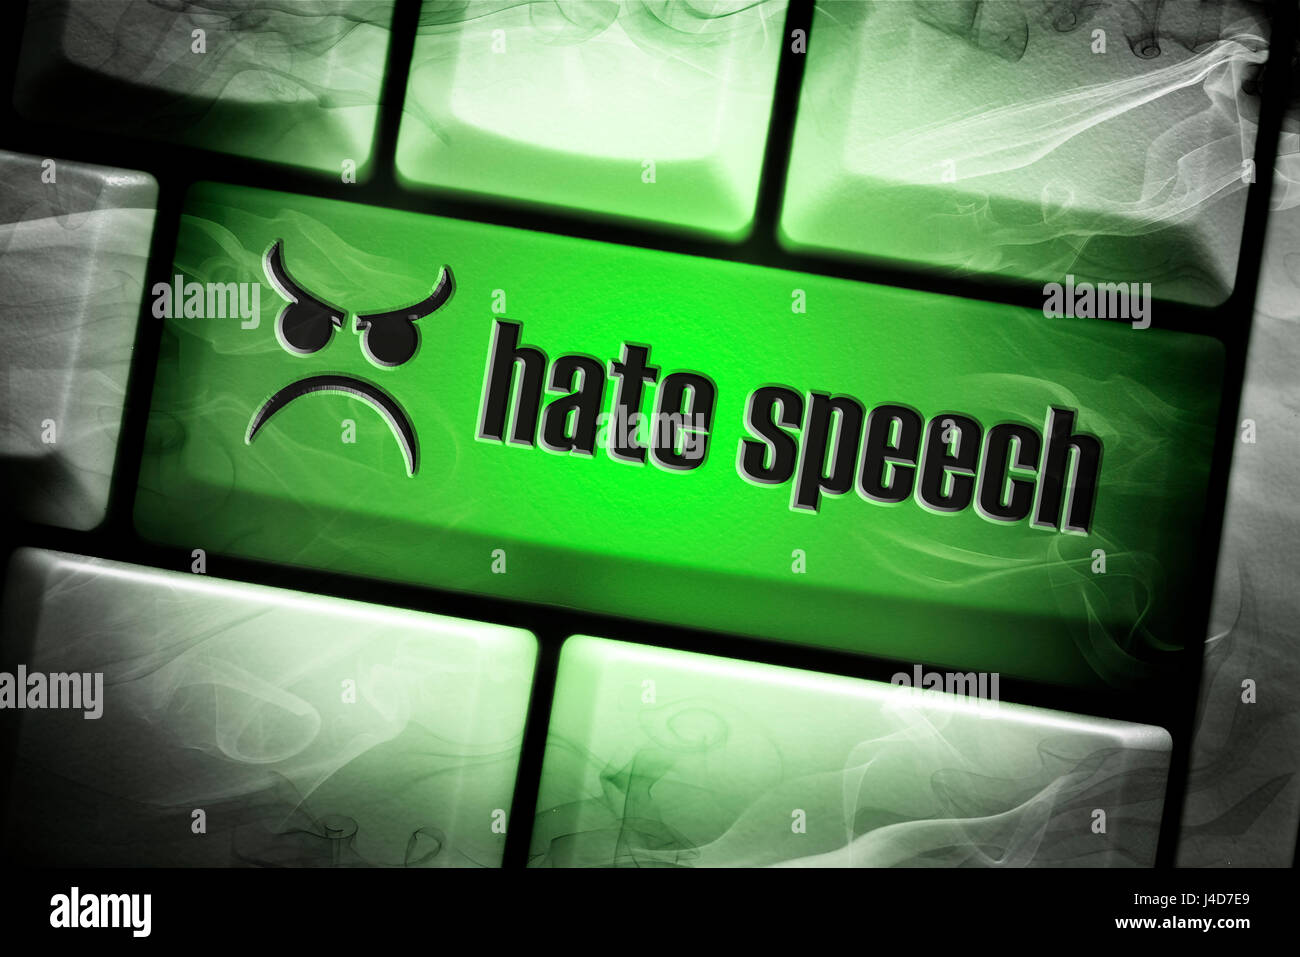 Chiave del computer con l'etichetta di odio, di odio parlando su reti sociali, Computertaste mit der Aufschrift odio, Hassreden in sozialen Netzwe Foto Stock